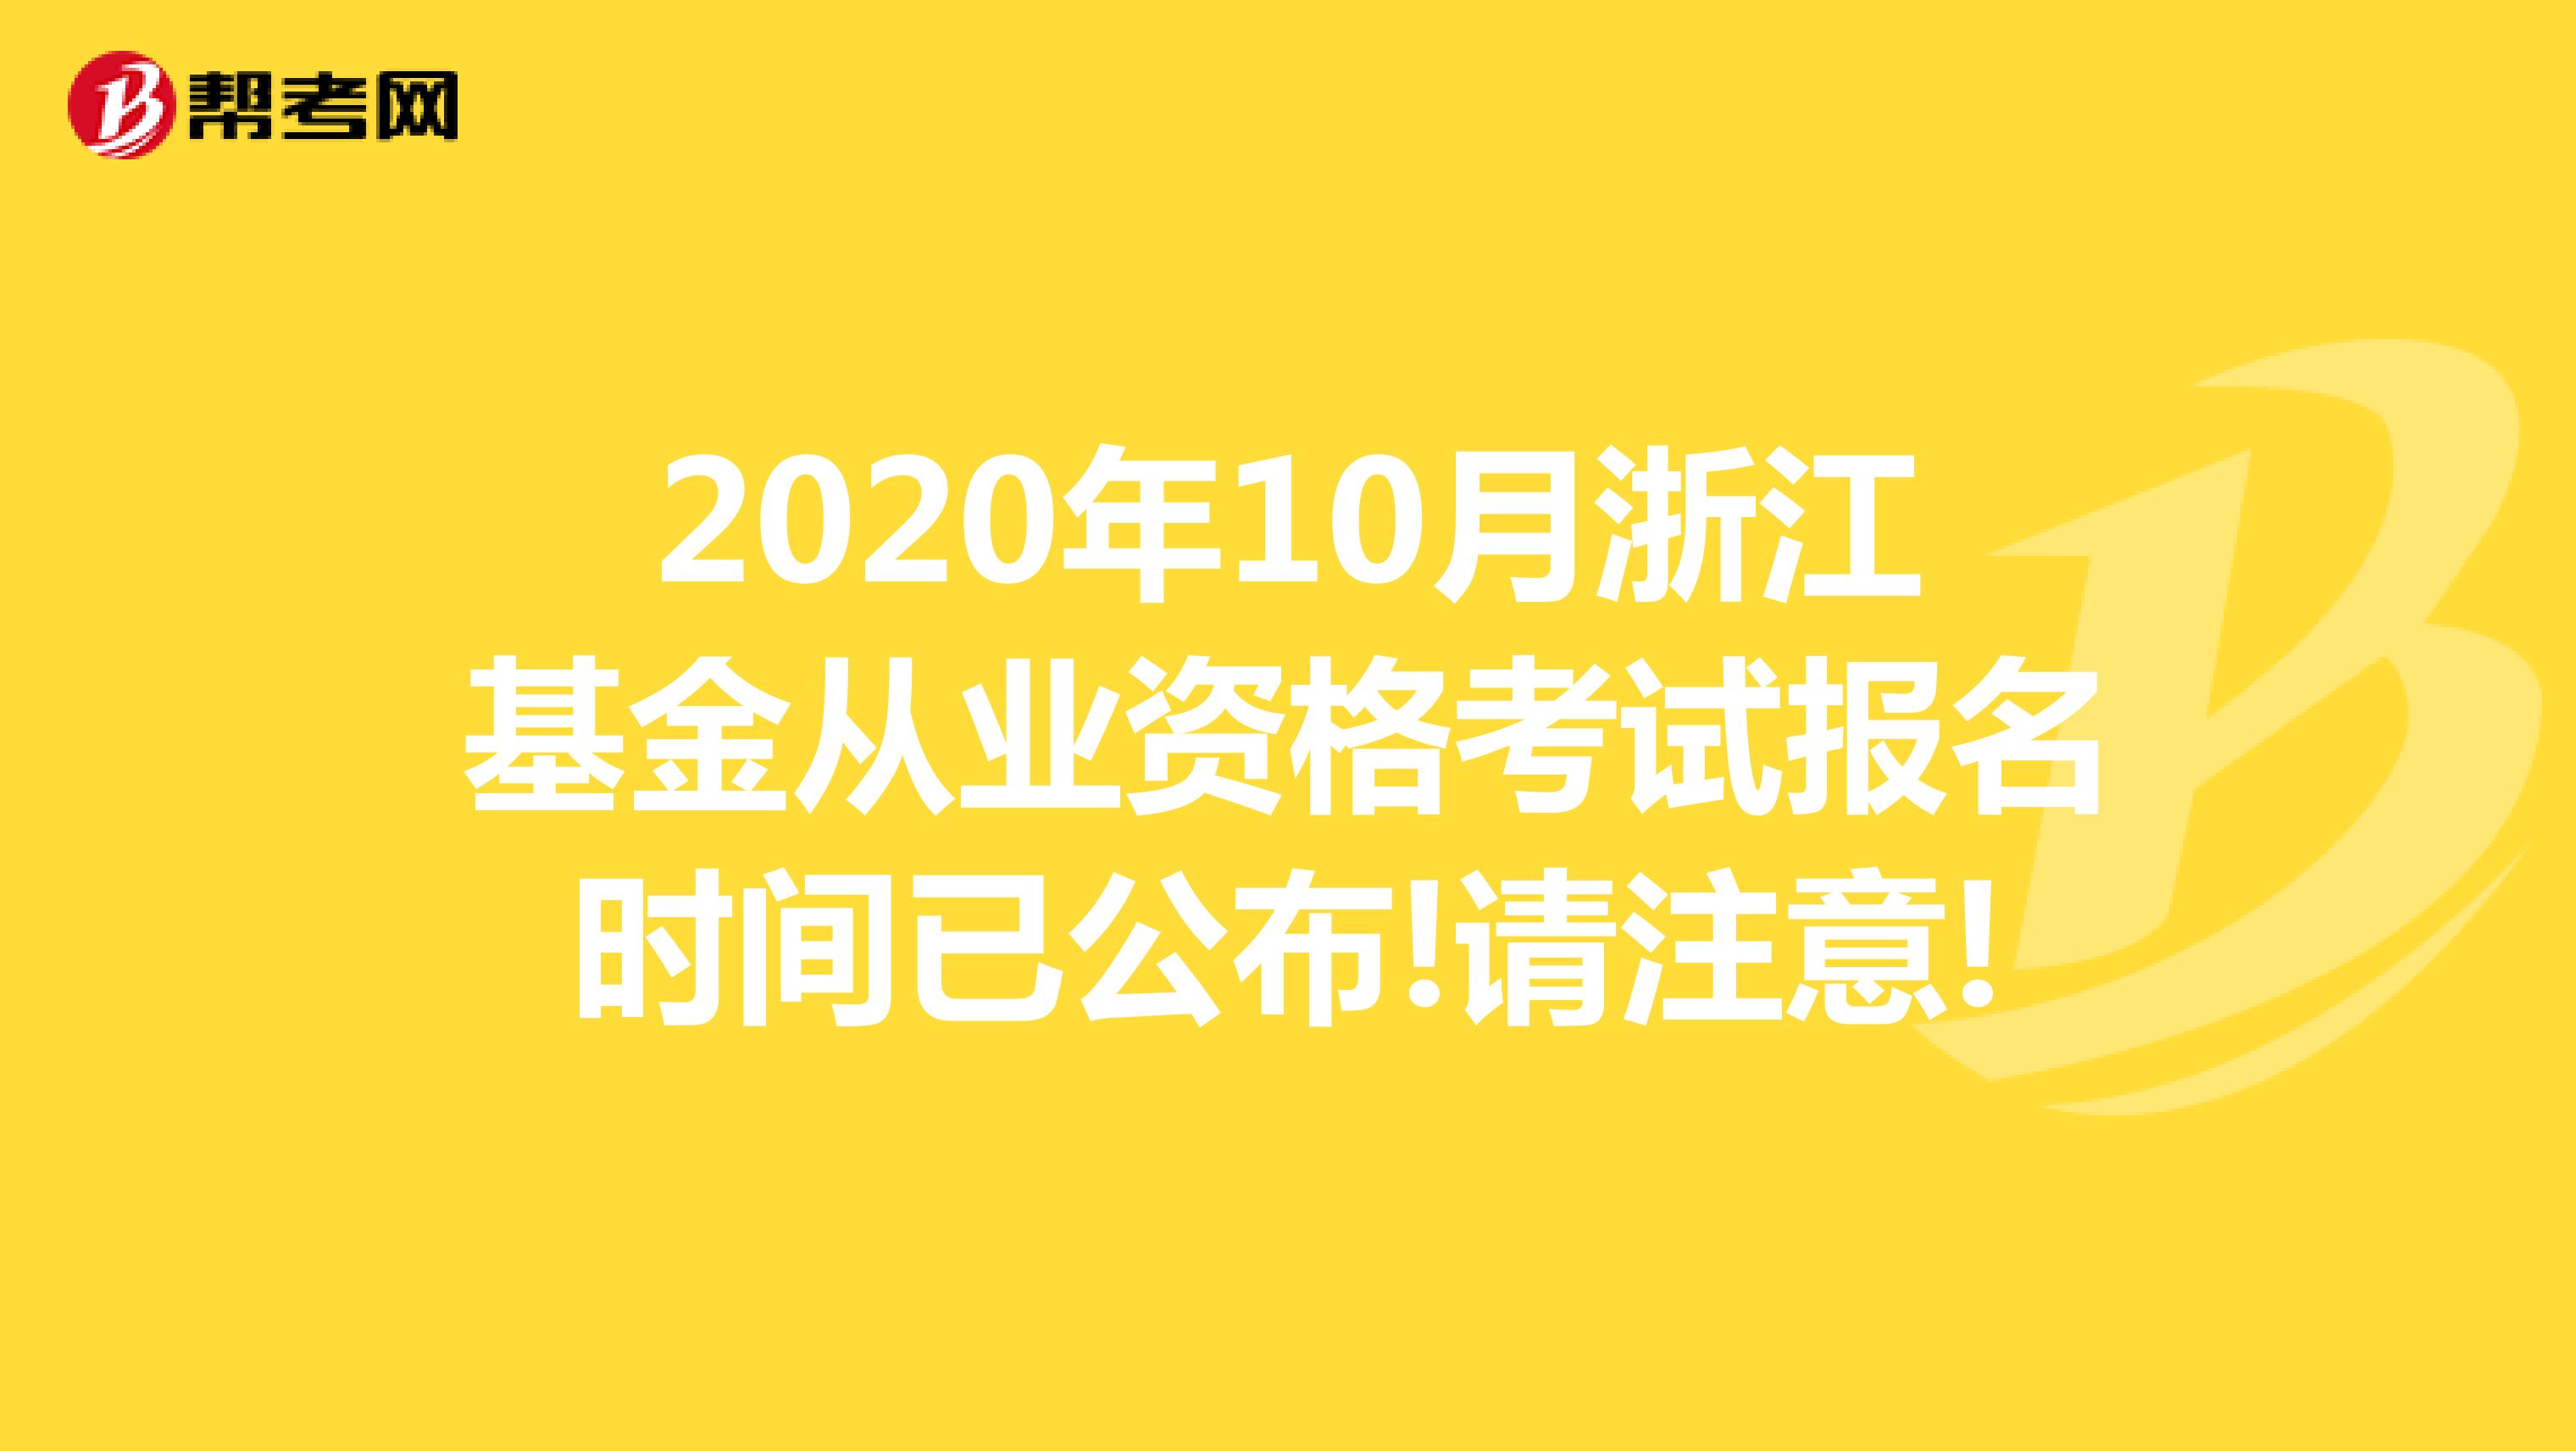 2020年10月浙江基金从业资格考试报名时间已公布!请注意!